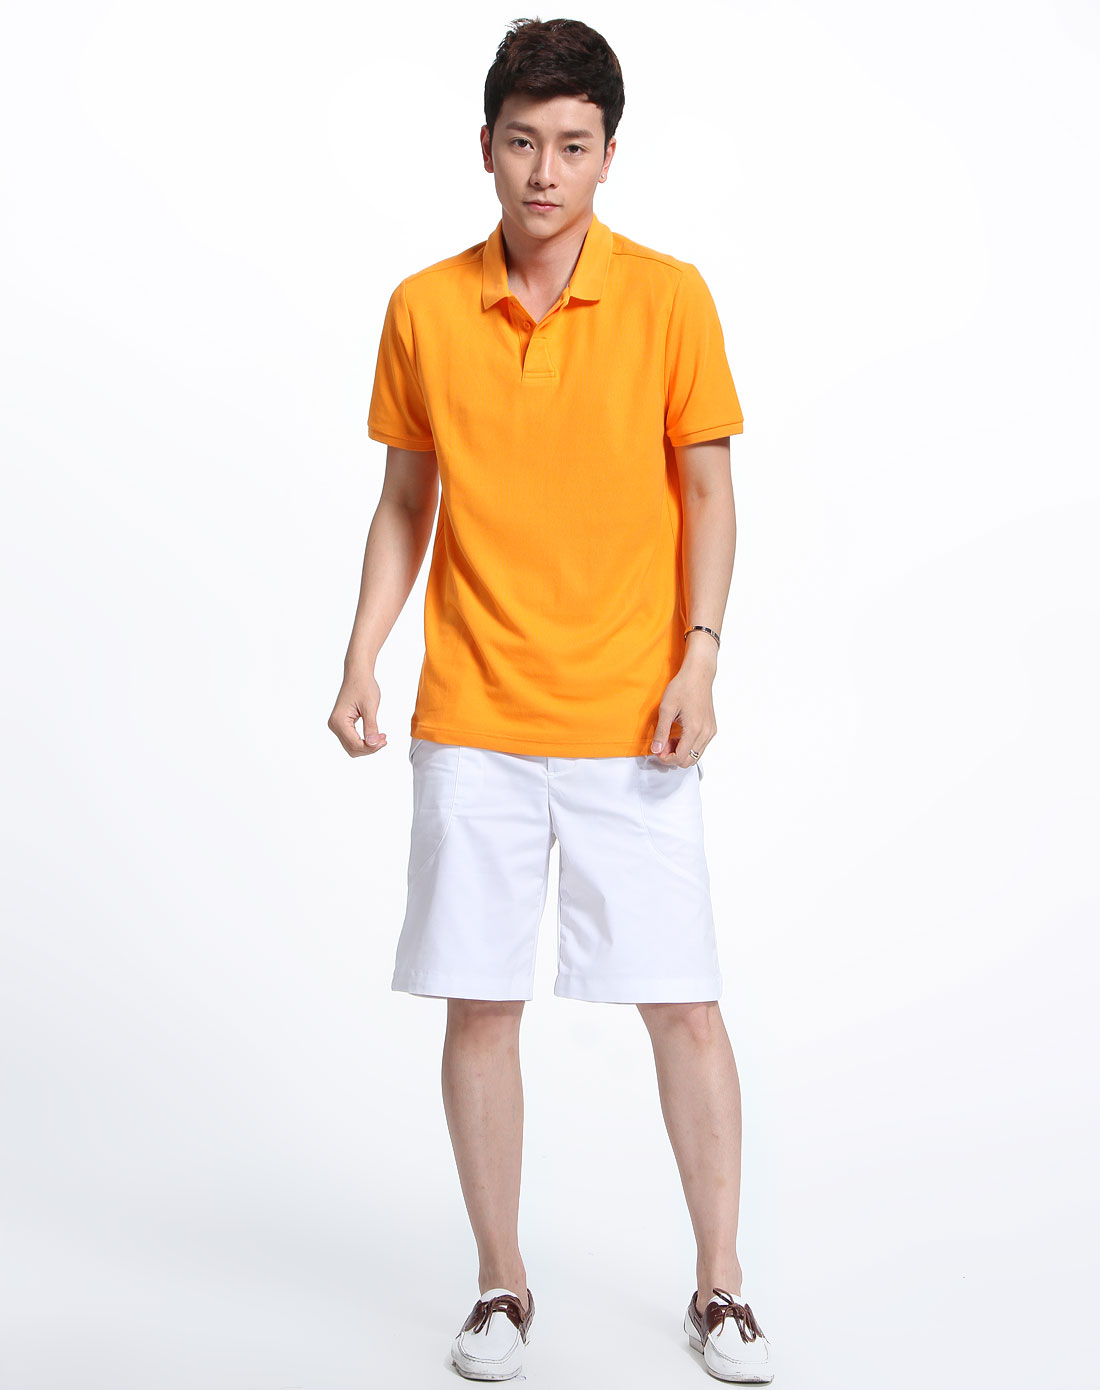 橙色衣服适合男孩穿不图片